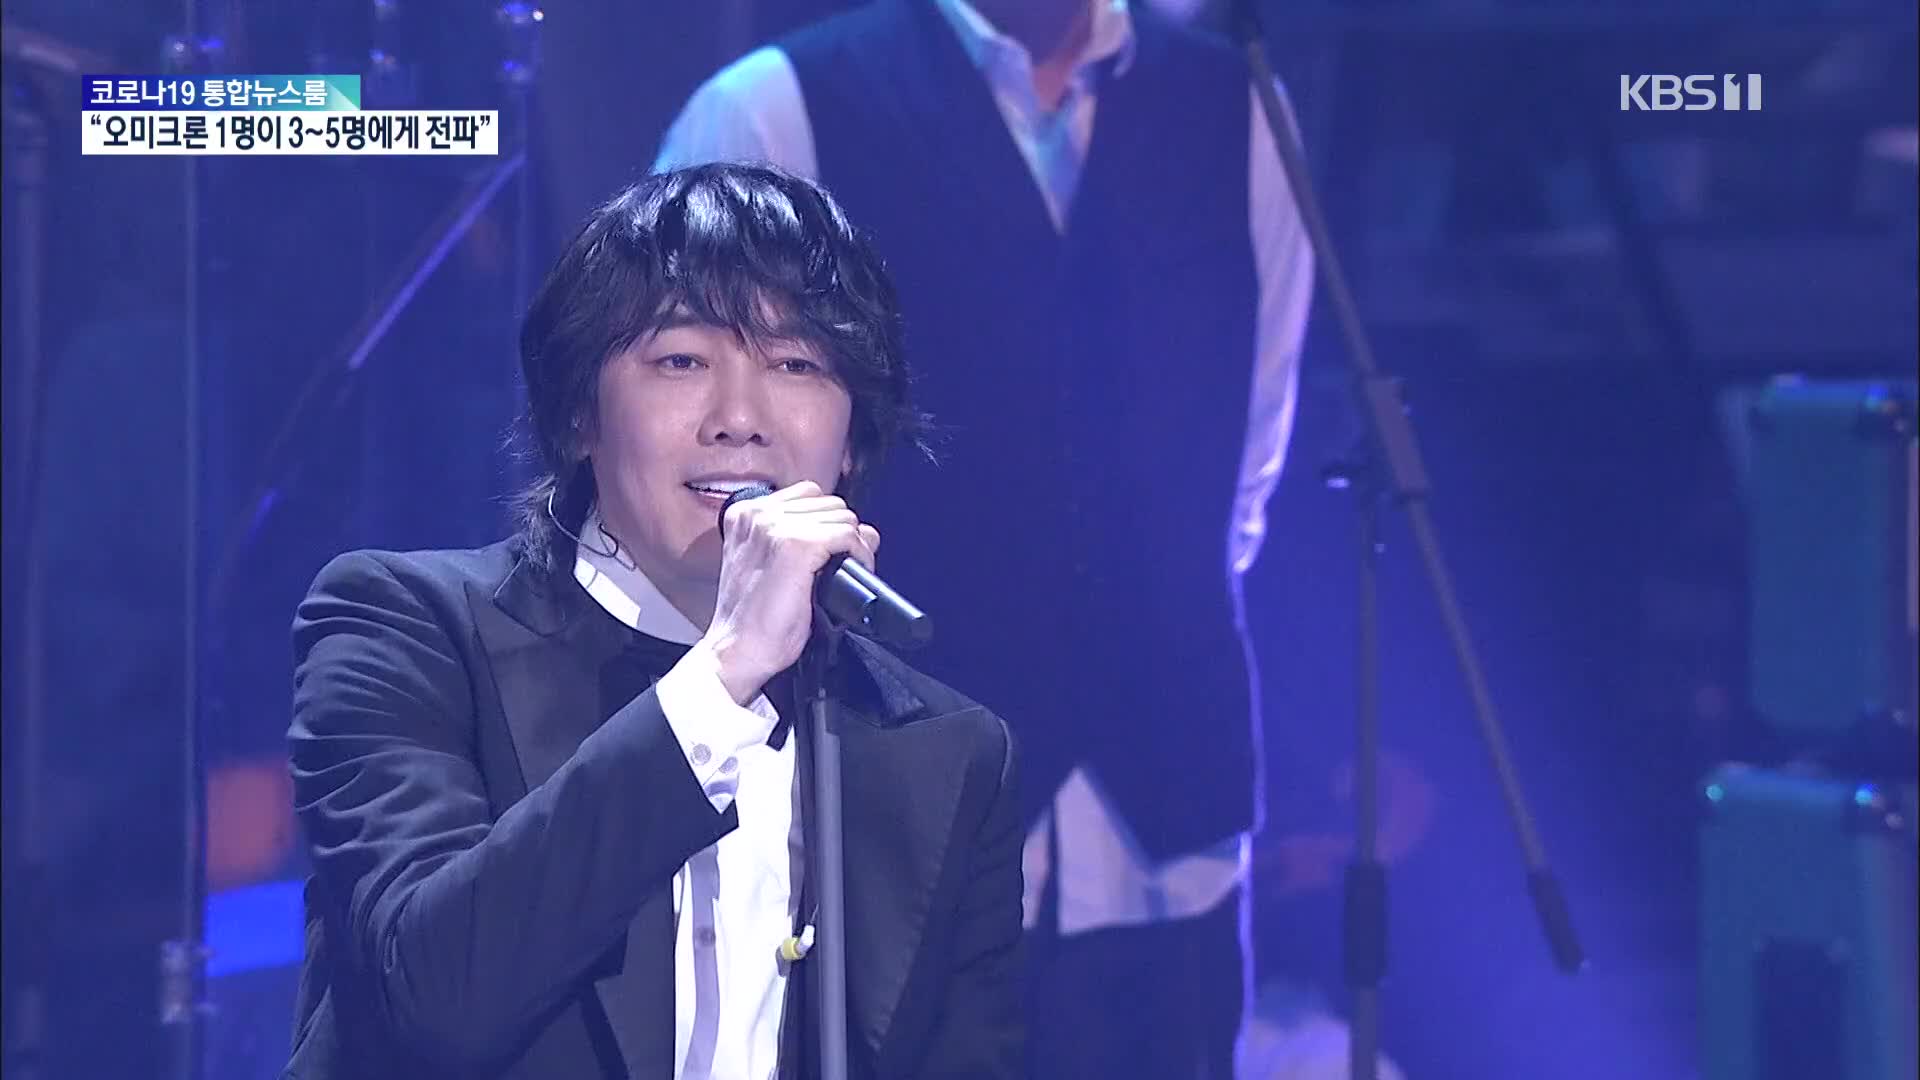 [문화광장] 가수 김장훈, ‘세계지도 오류 바로잡기’ 캠페인